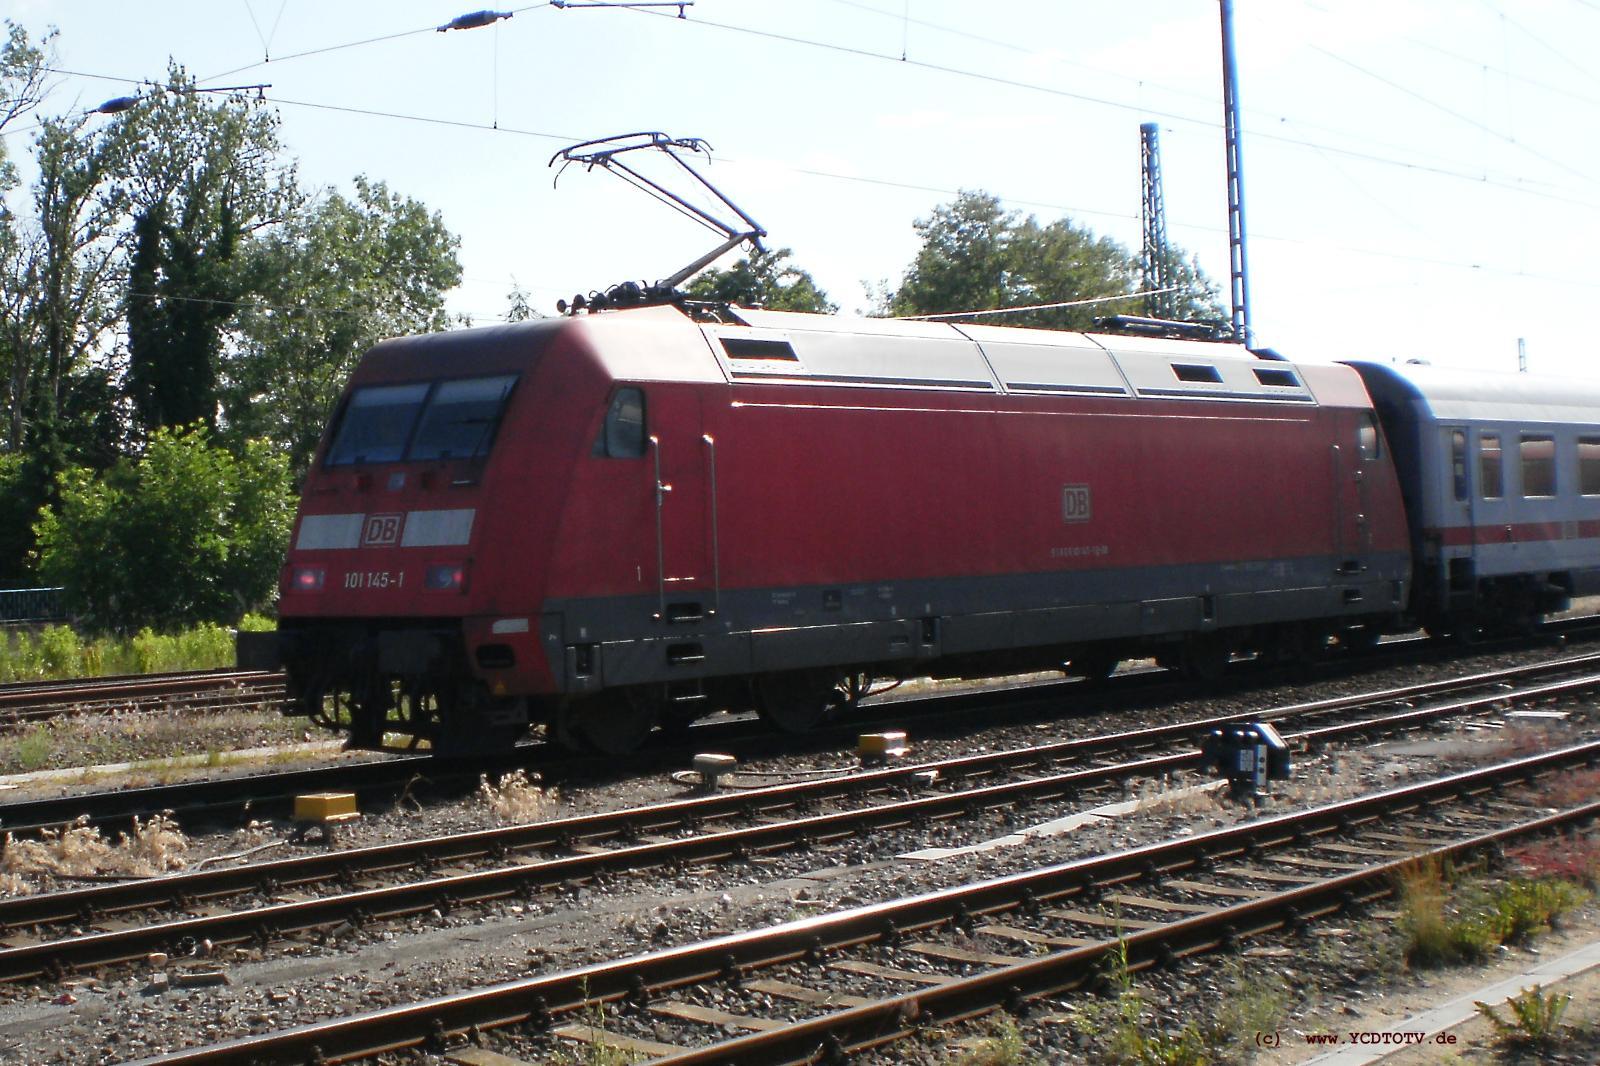 Bahnhof Stendal 15.06.2010, 101 145-1 